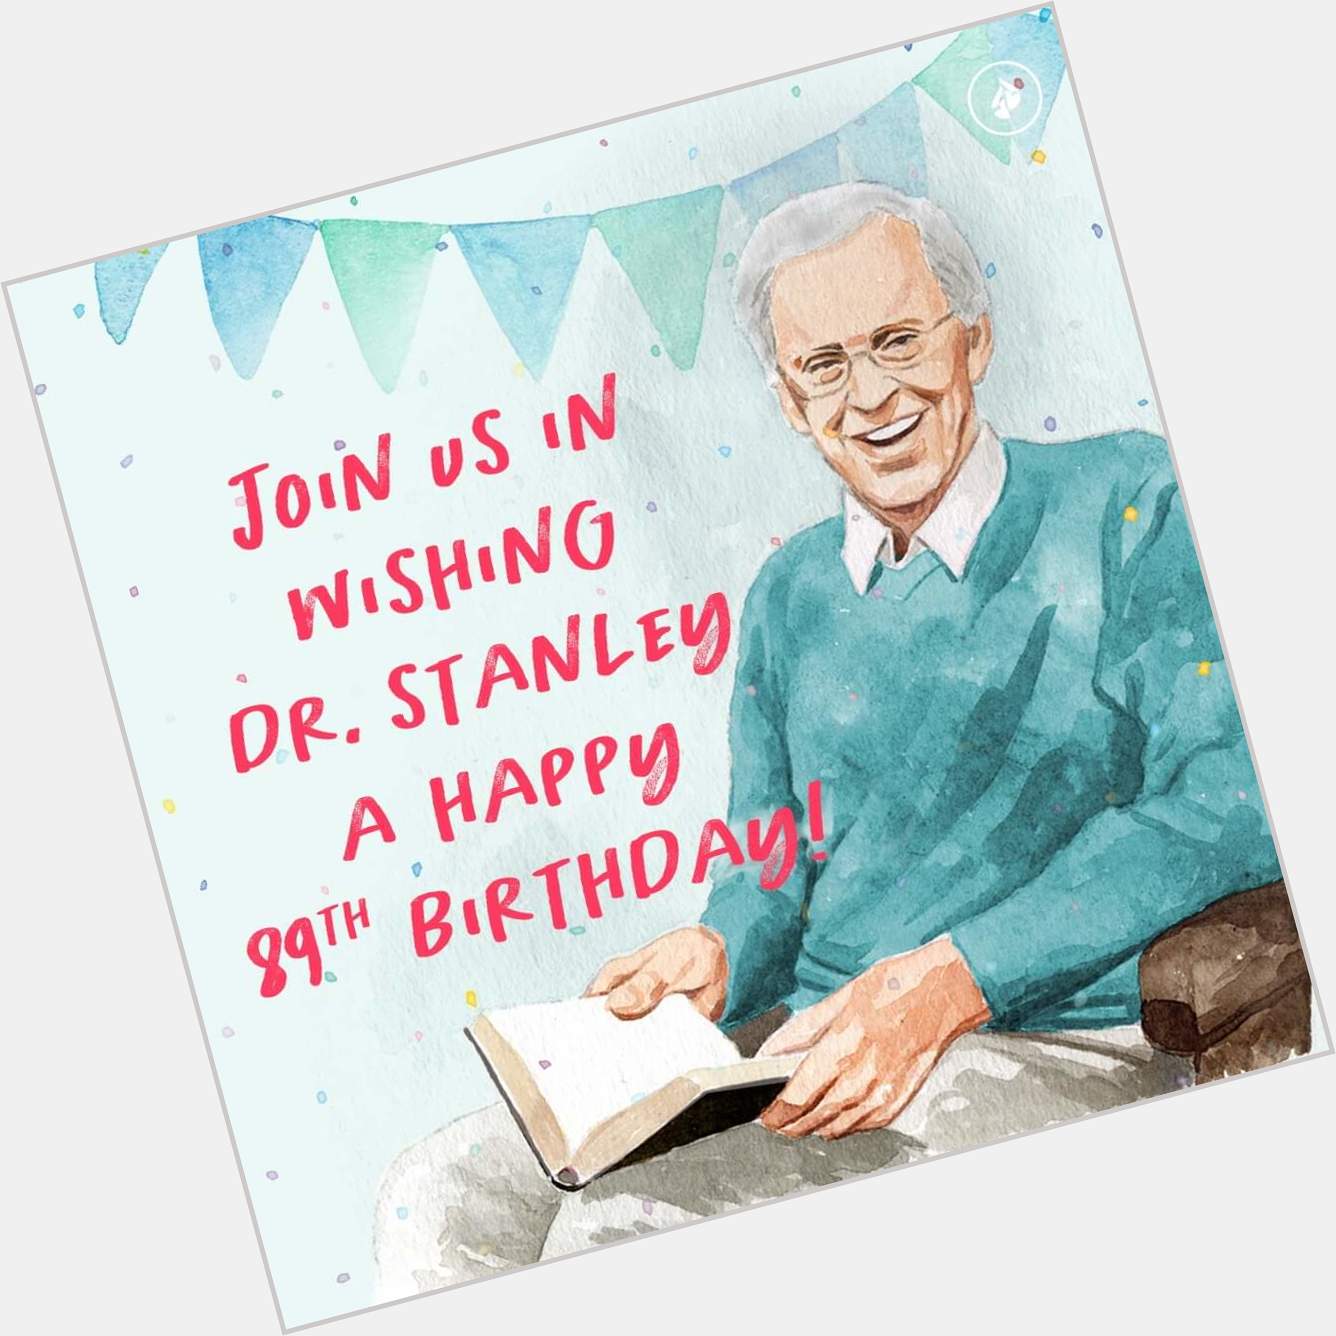 Happy Birthday, Rev. Charles Stanley 